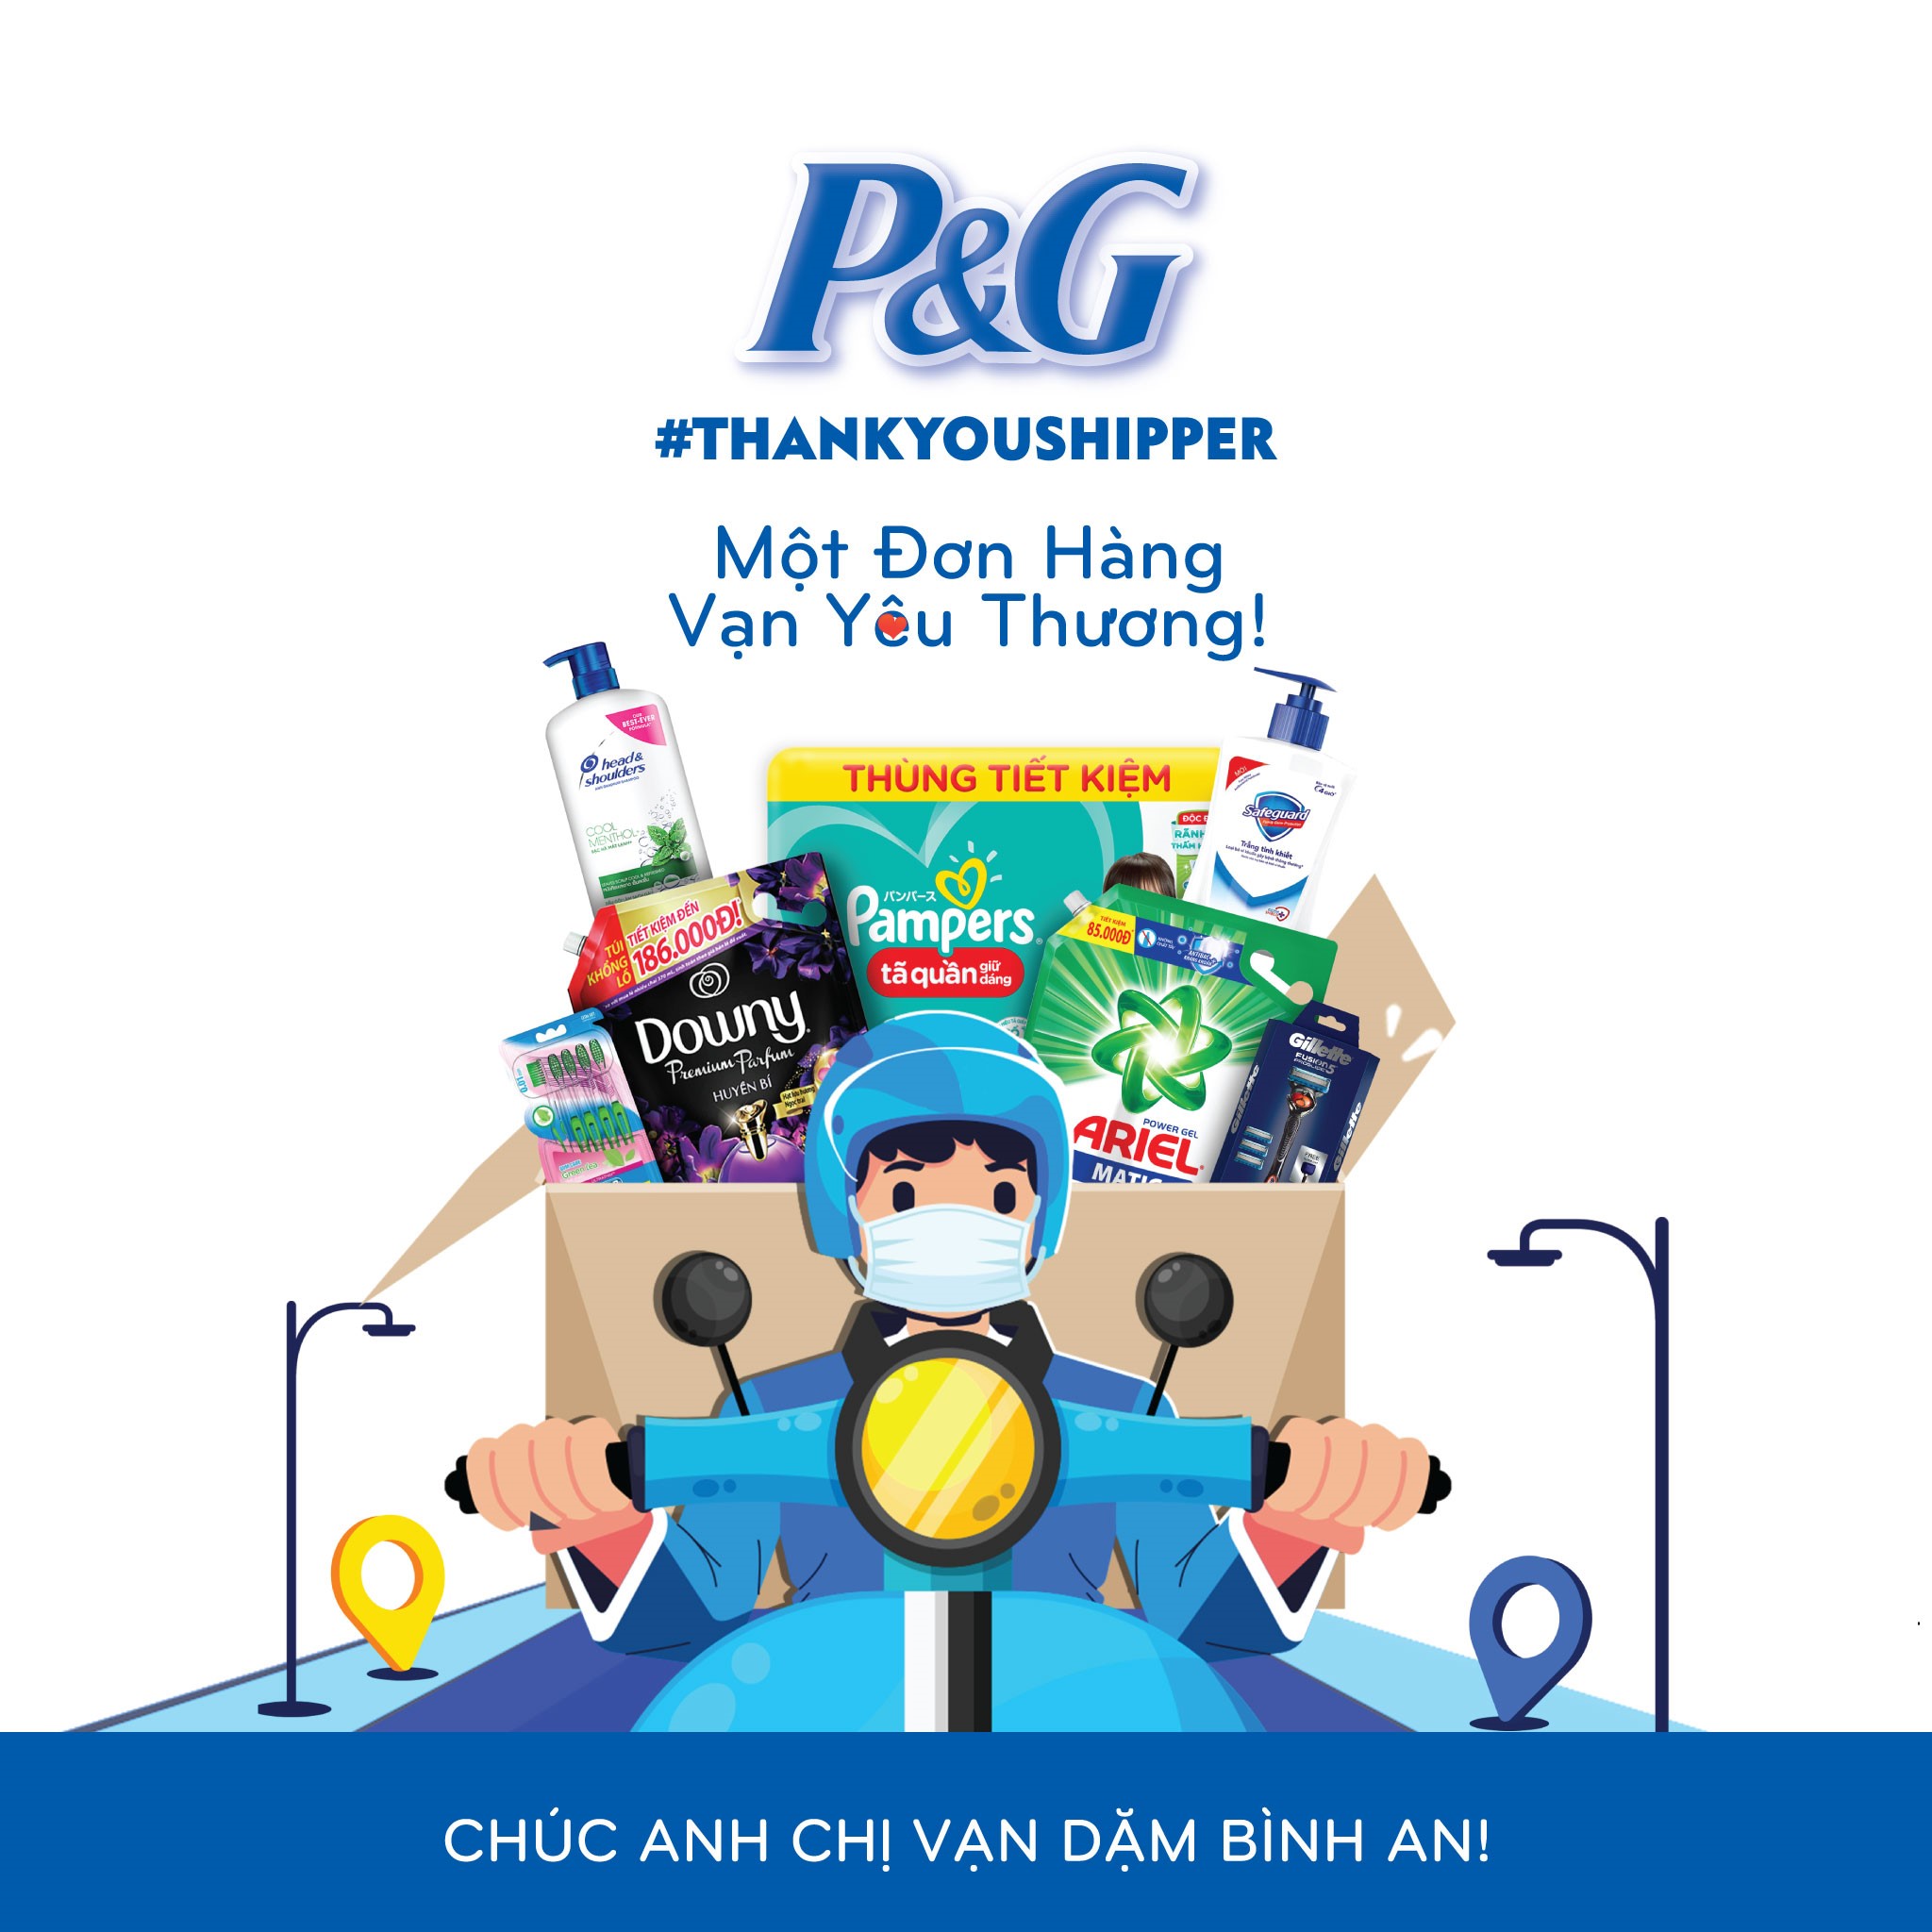  P&G Việt Nam phát động chương trình “Một đơn hàng, vạn yêu thương”. 